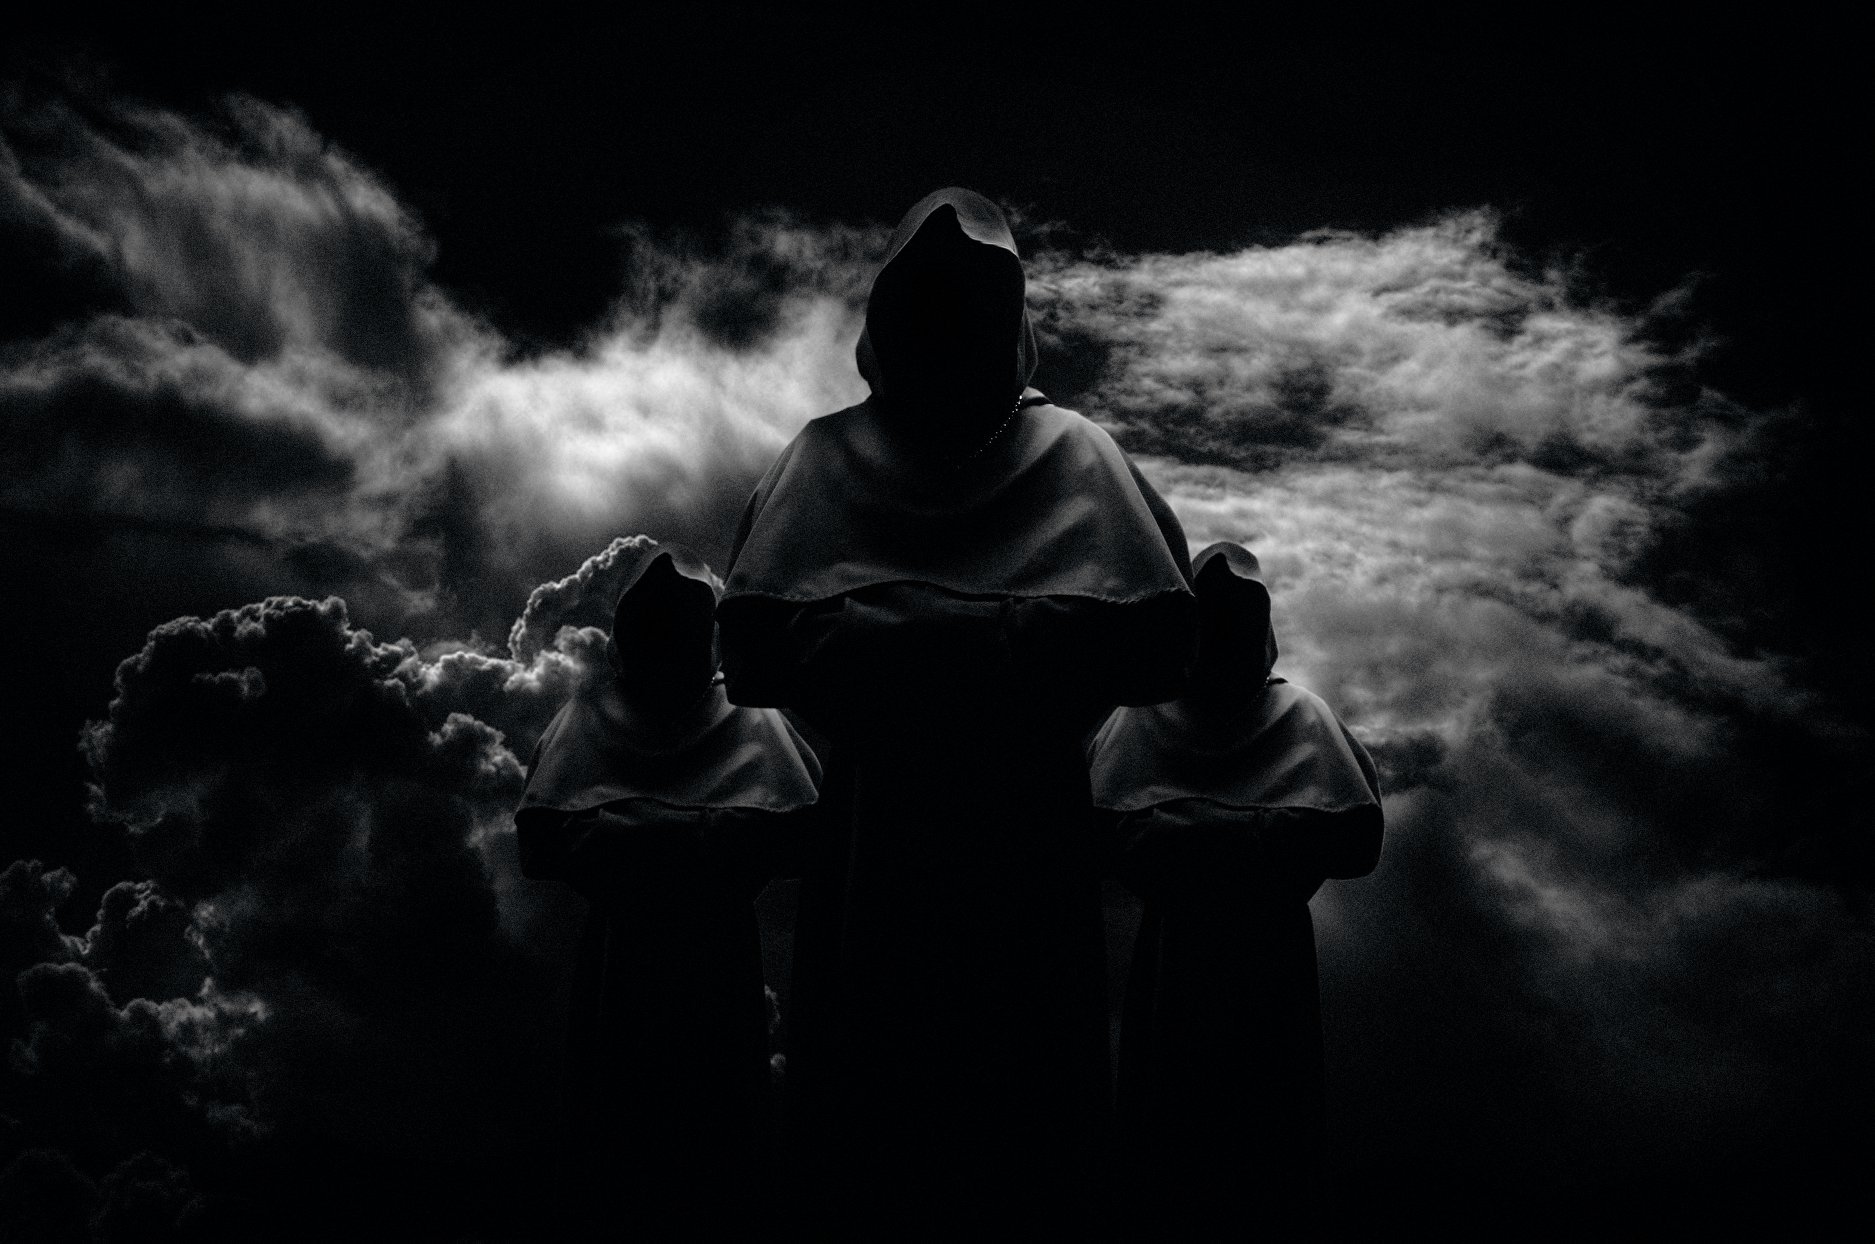 Οι BLUT AUS NORD δημοσίευσαν το πρώτο single από το επερχόμενο άλμπουμ τους «Disharmonium – Undreamable Abysses»!